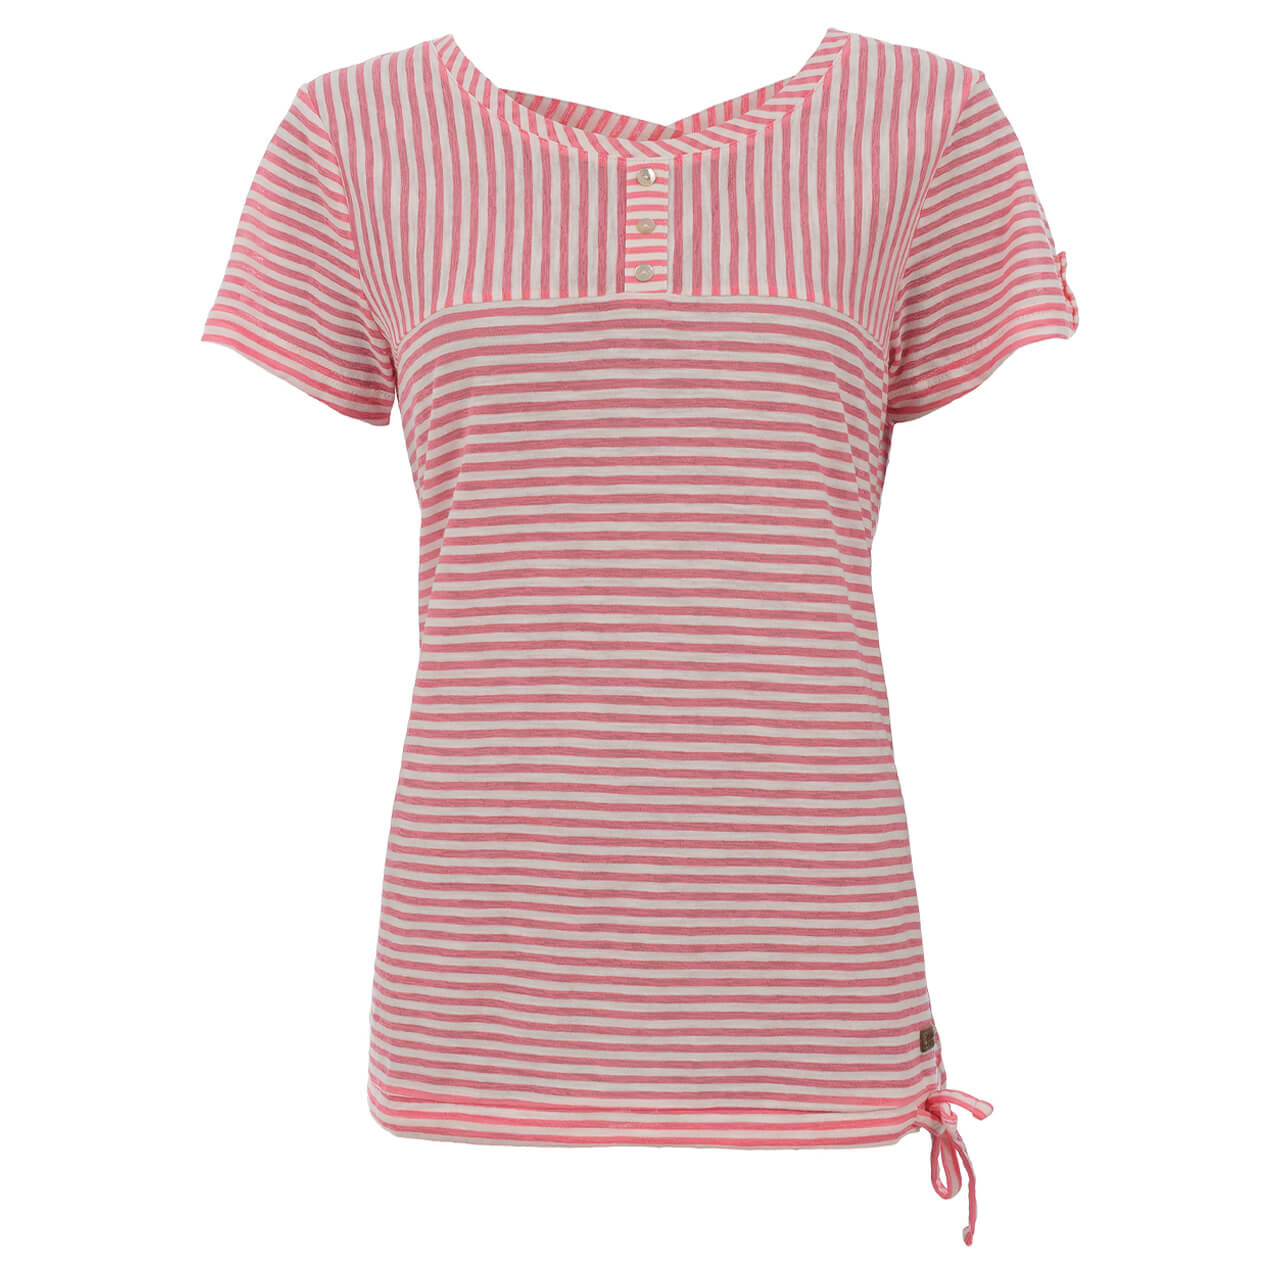 Soquesto T-Shirt für Damen in Rosa gestreift, FarbNr.: 1301